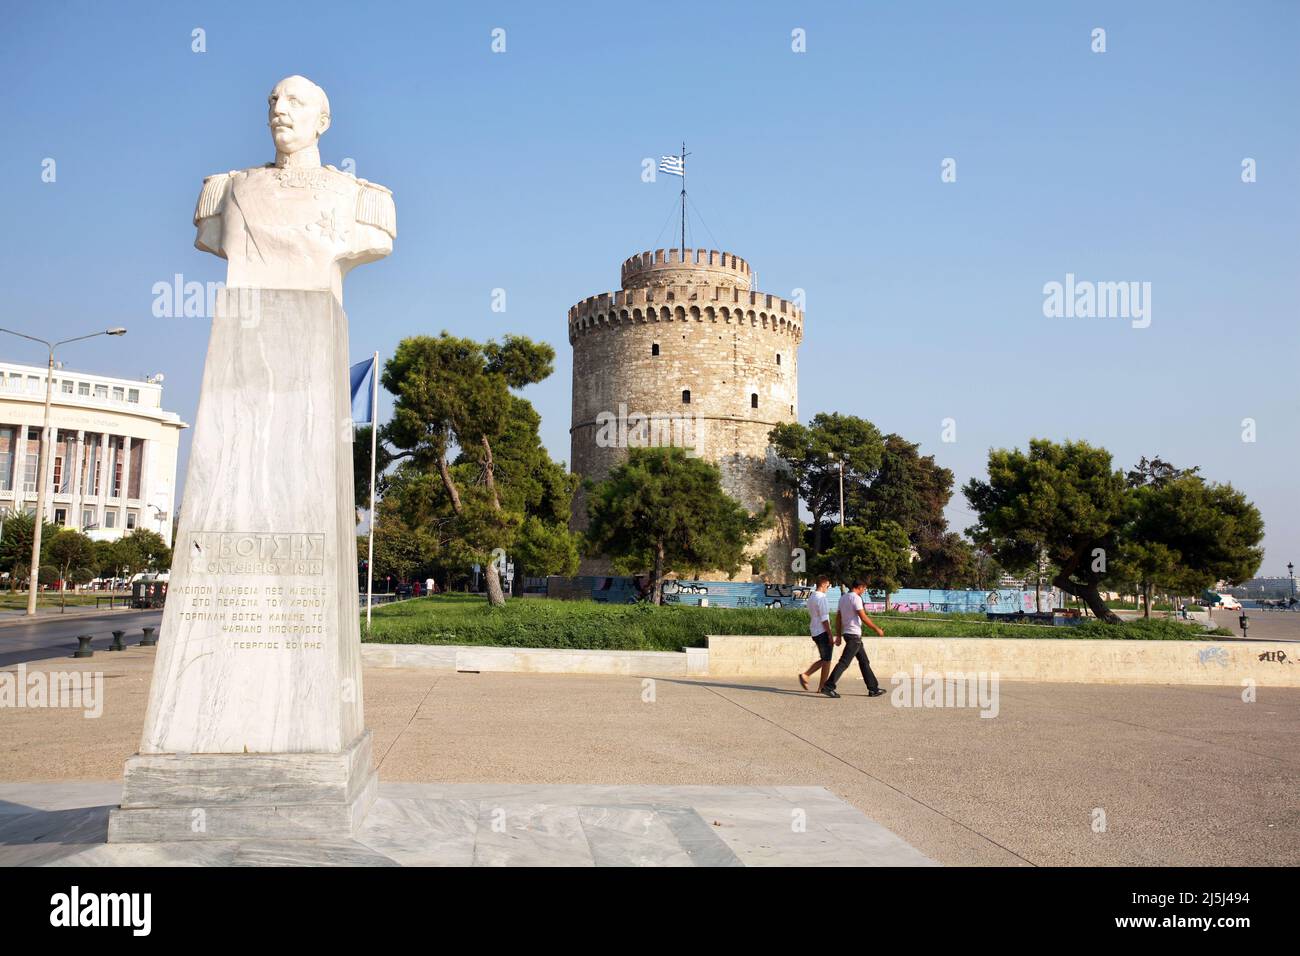 Admiral Votsis Statue und Weißer Turm auf der Rückseite in Thessaloniki, Griechenland. Thessaloniki ist die zweitgrößte Stadt Griechenlands. Stockfoto